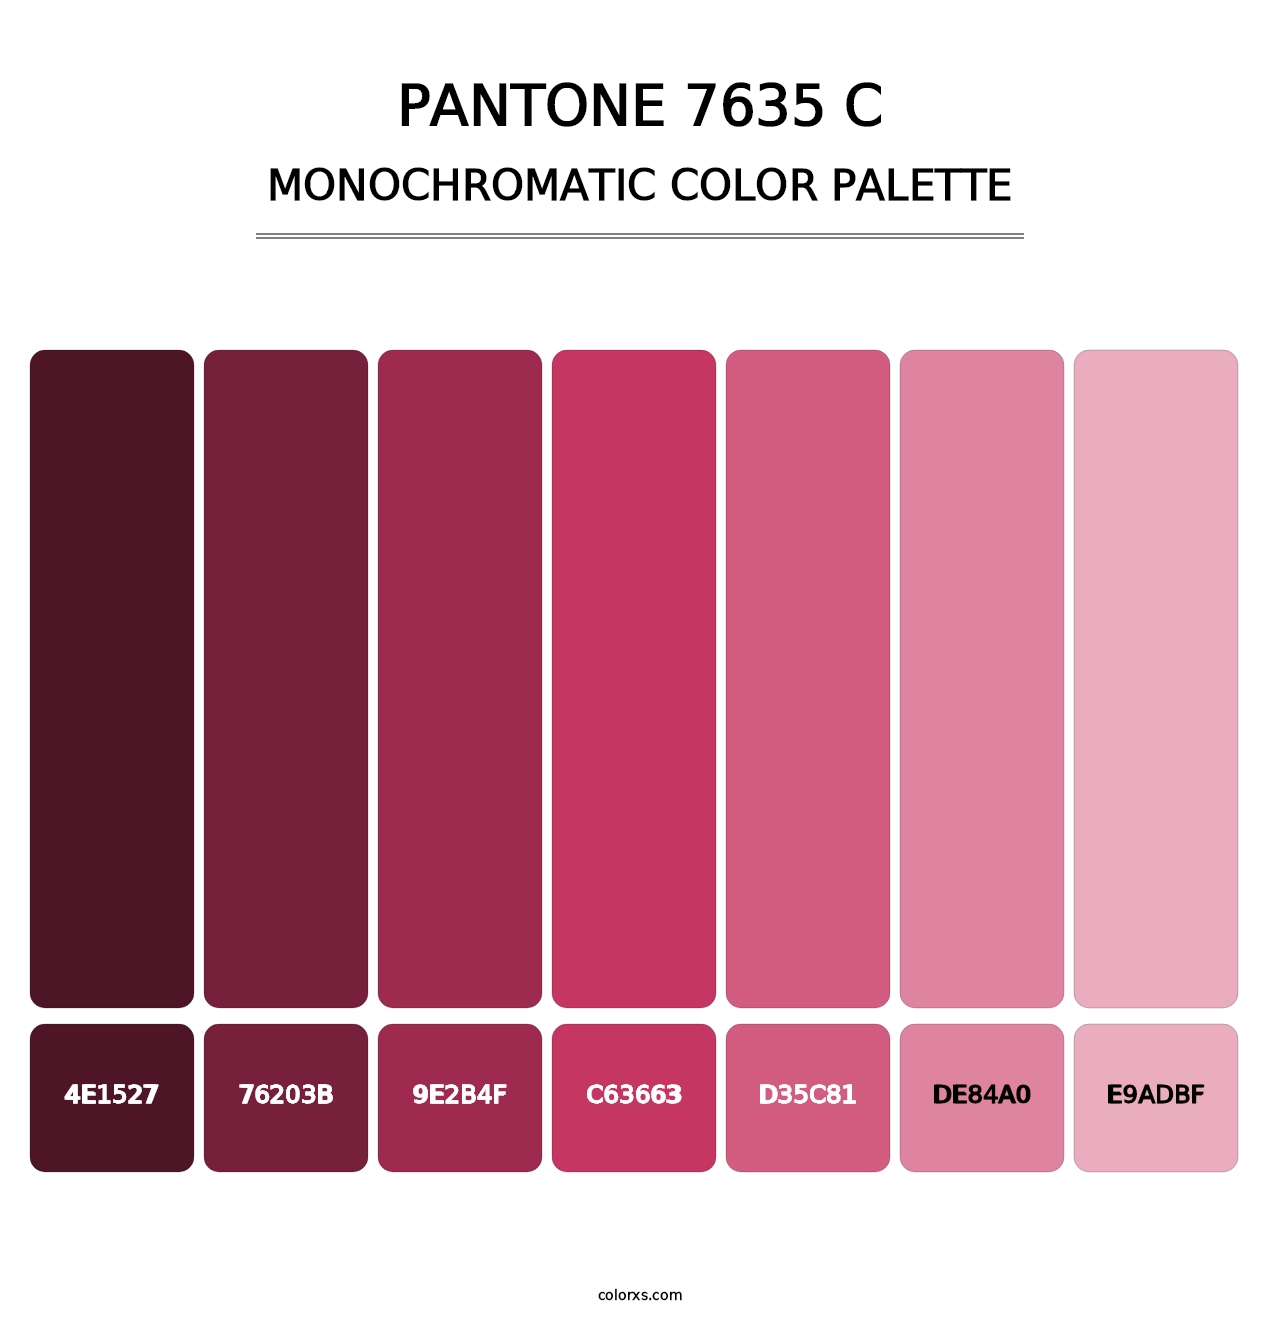 PANTONE 7635 C - Monochromatic Color Palette